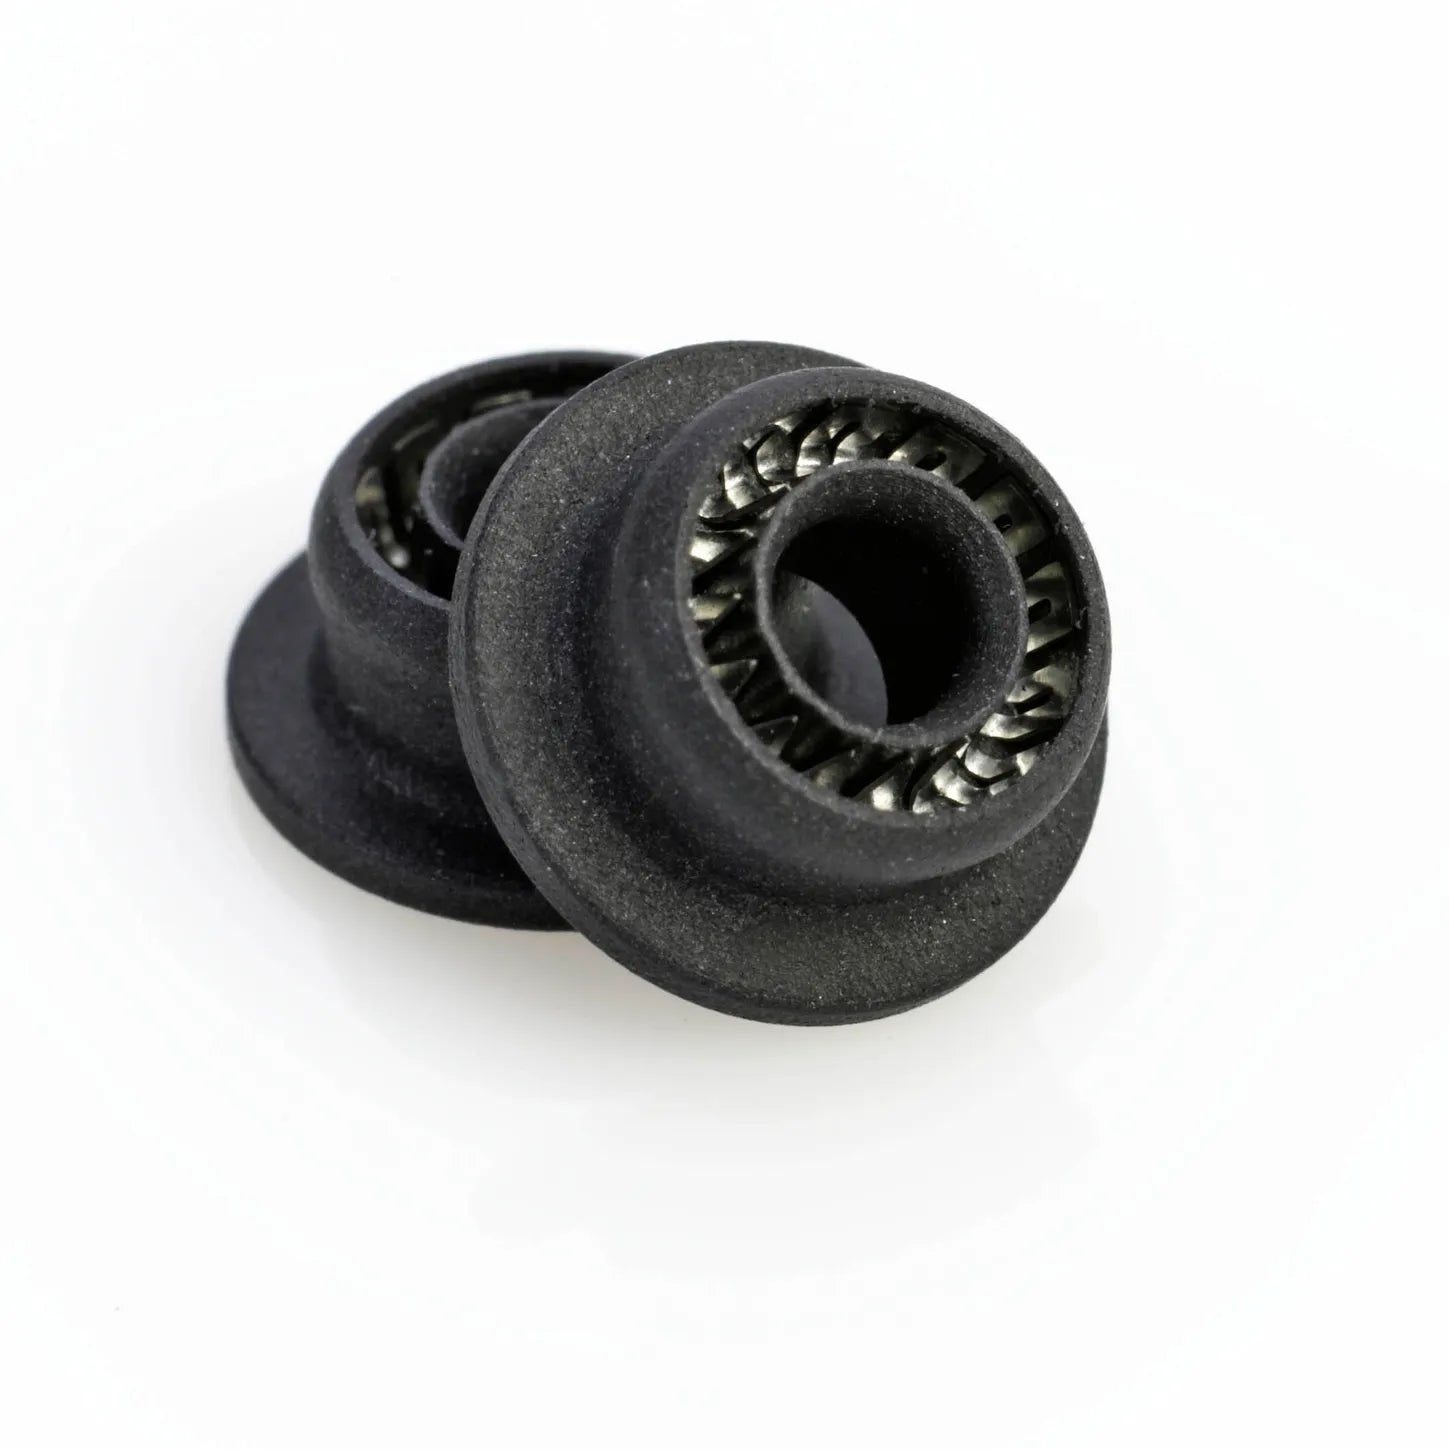 Black Piston Seals, 2/pk, Comparable to Agilent # 5063-6589